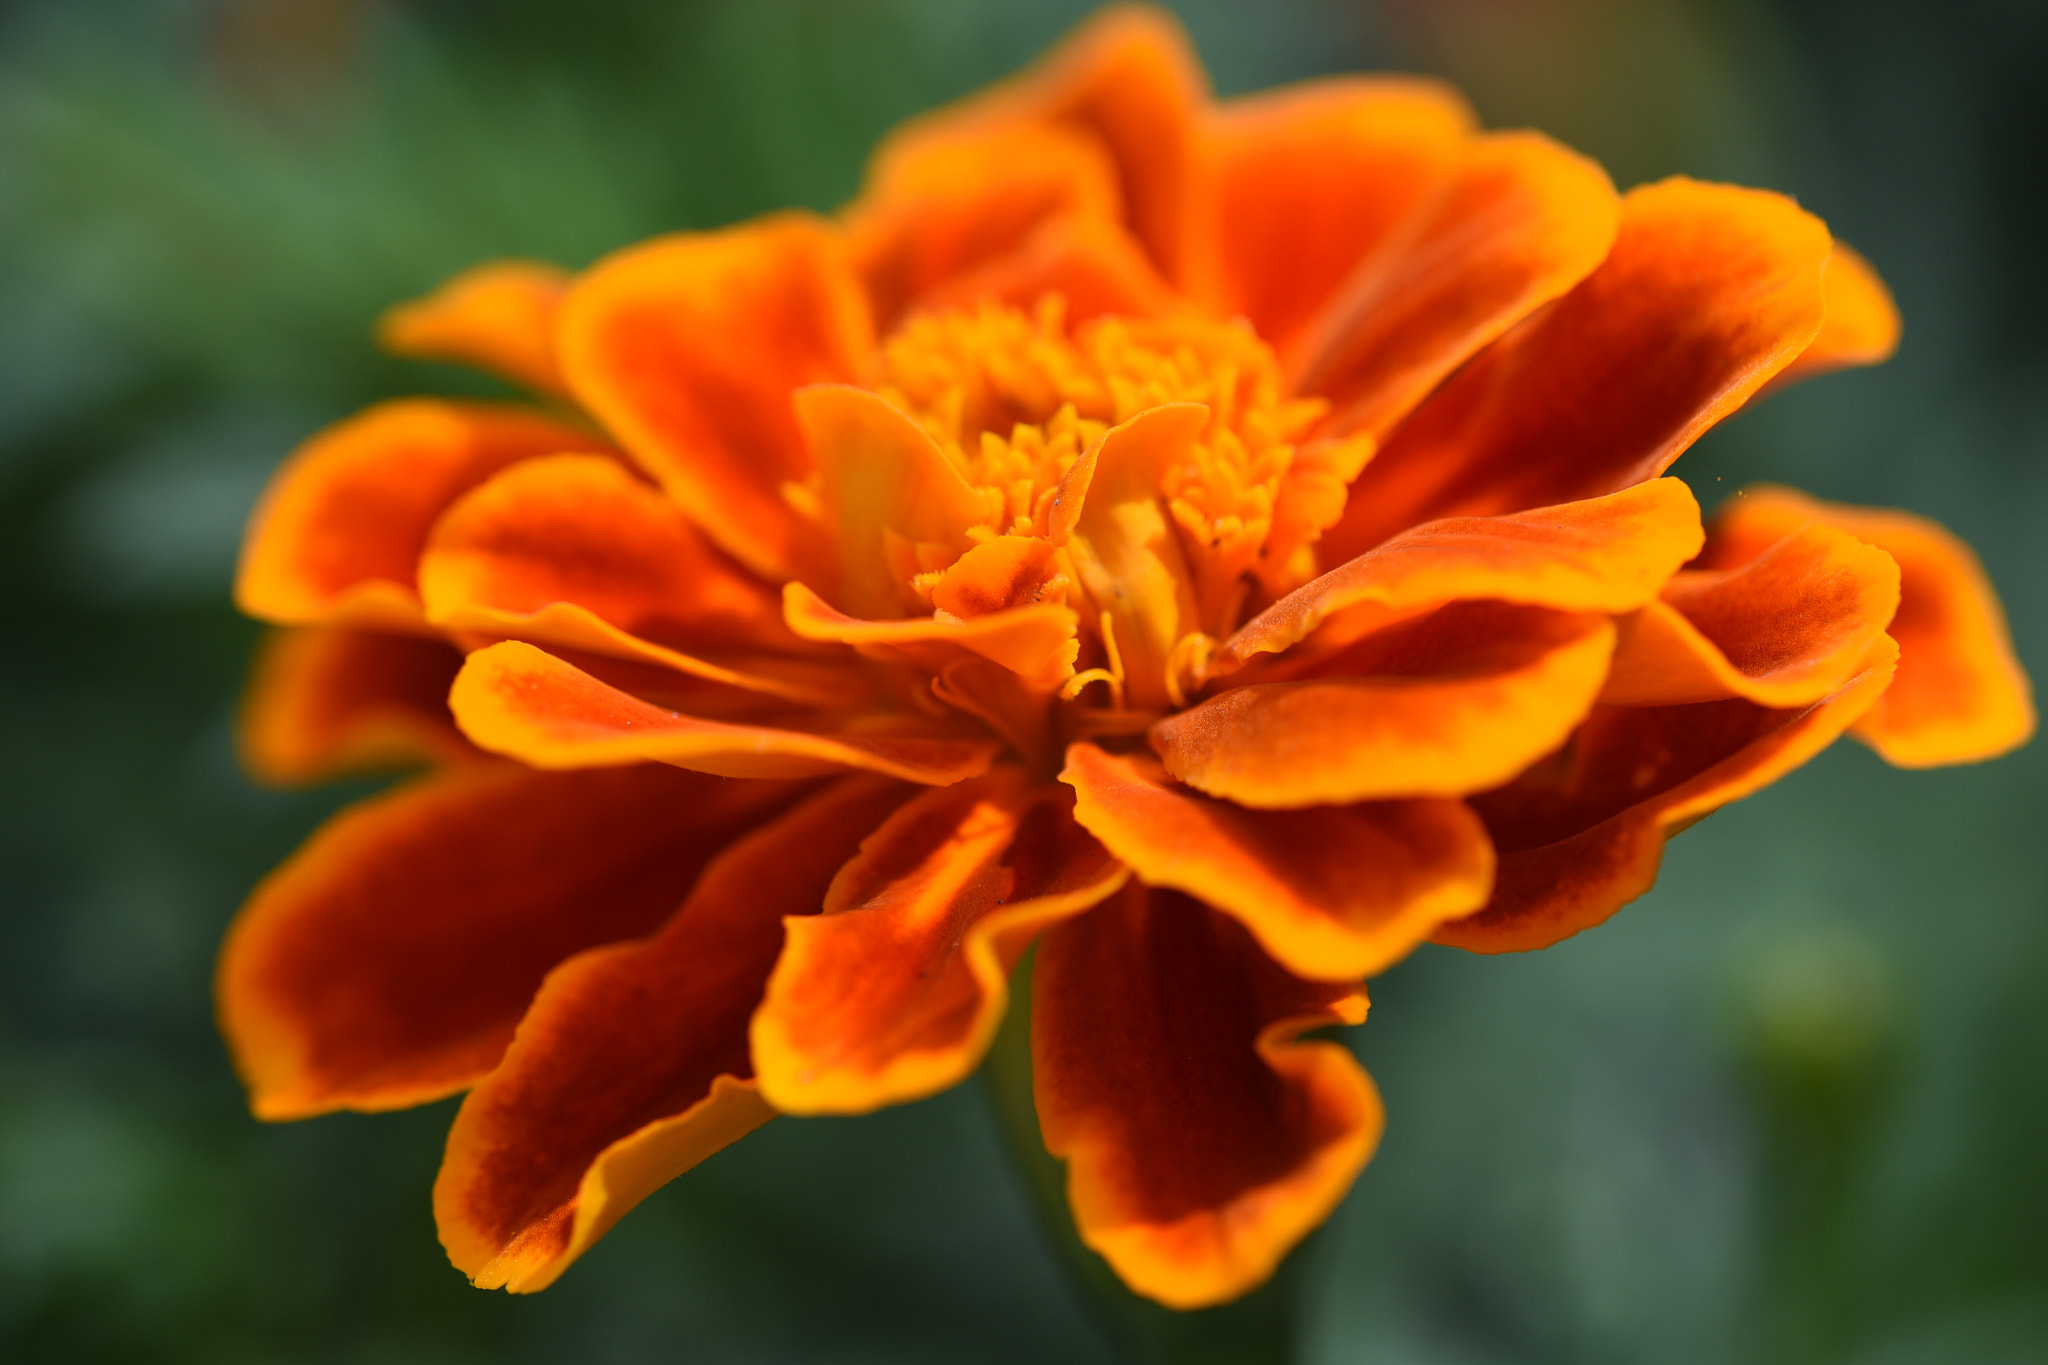 Nikon AF Micro-Nikkor 200mm F4D ED-IF sample photo. Orange color flower photography